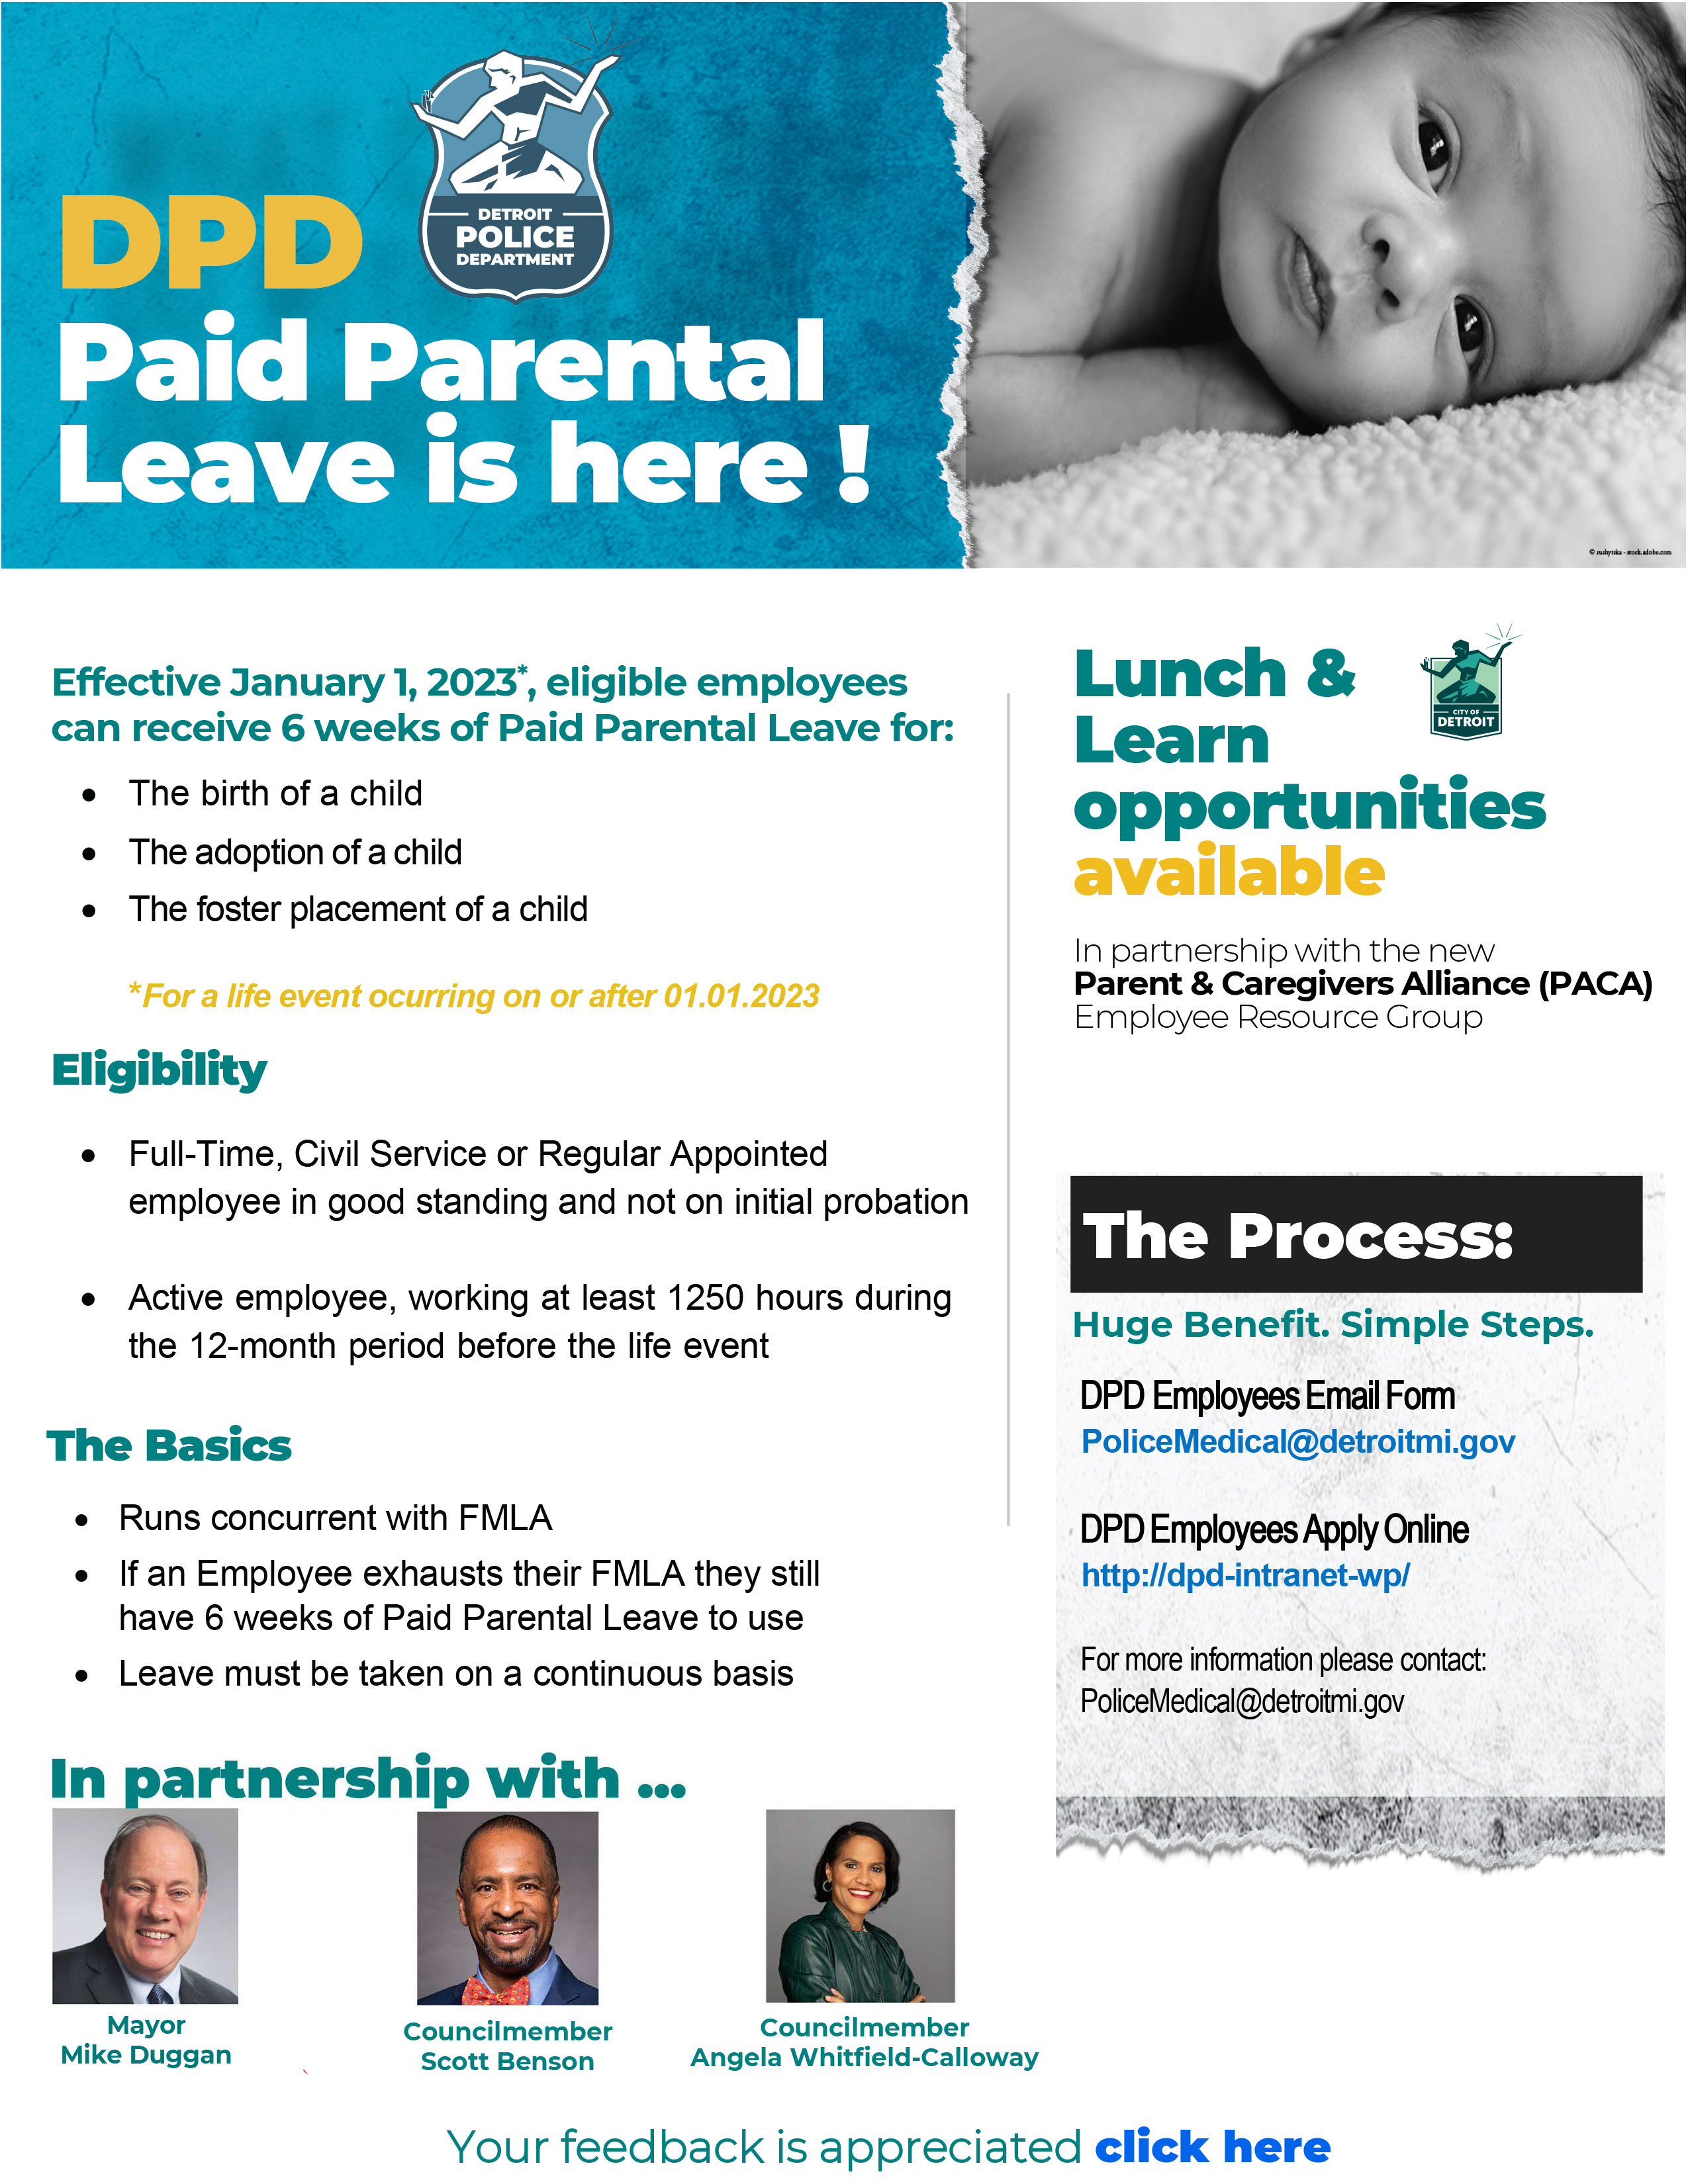 DPD Paid Parental Leave